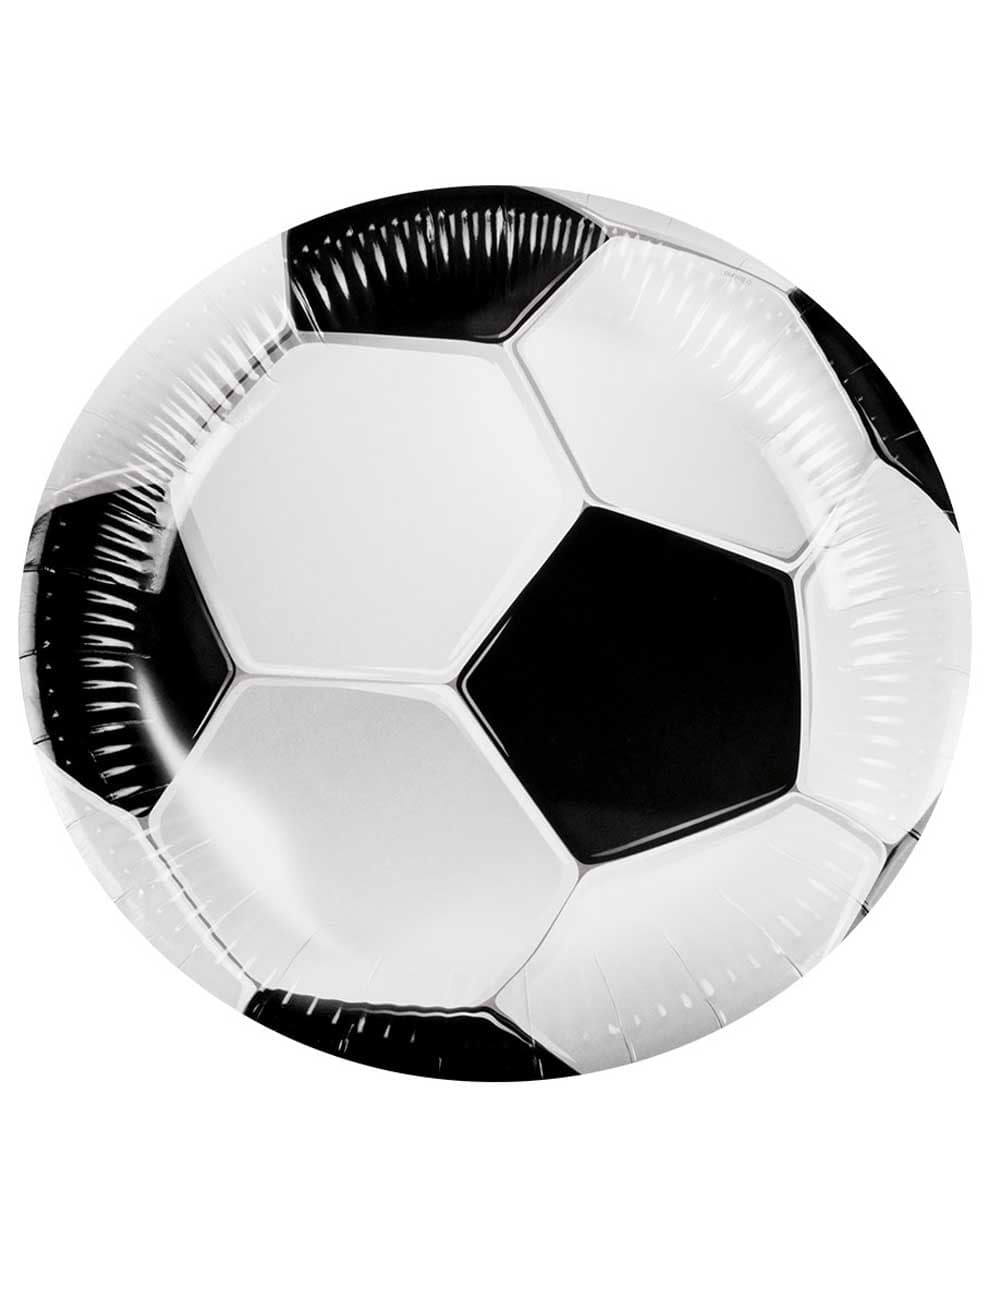 Pappteller Fußball 10 Stk. schwarz/weiß